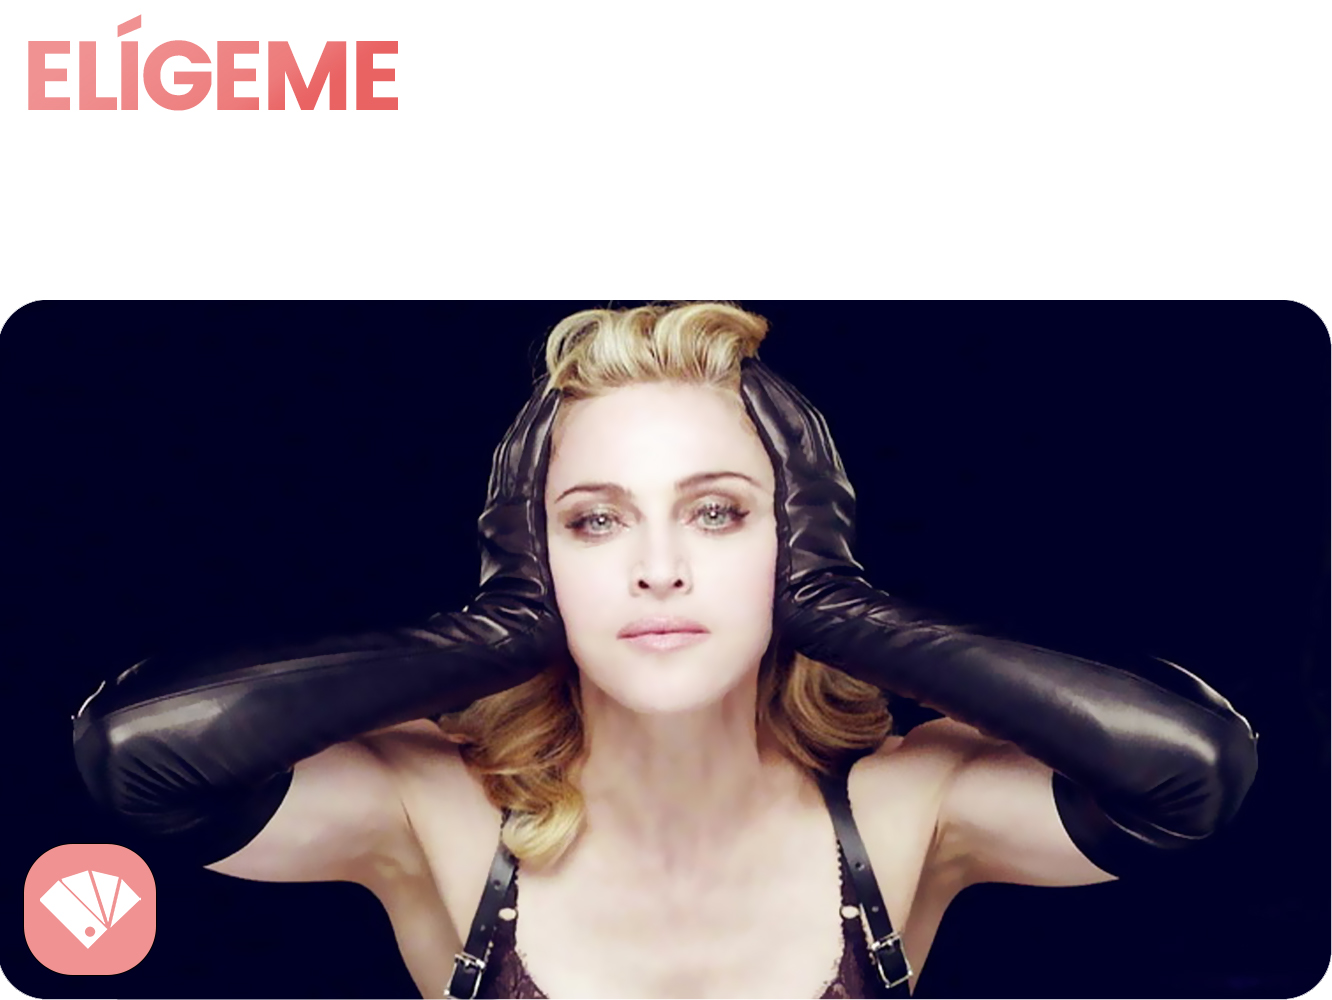  ‘Nobody Knows Me’, el posible as bajo la manga de una Madonna en horas bajas